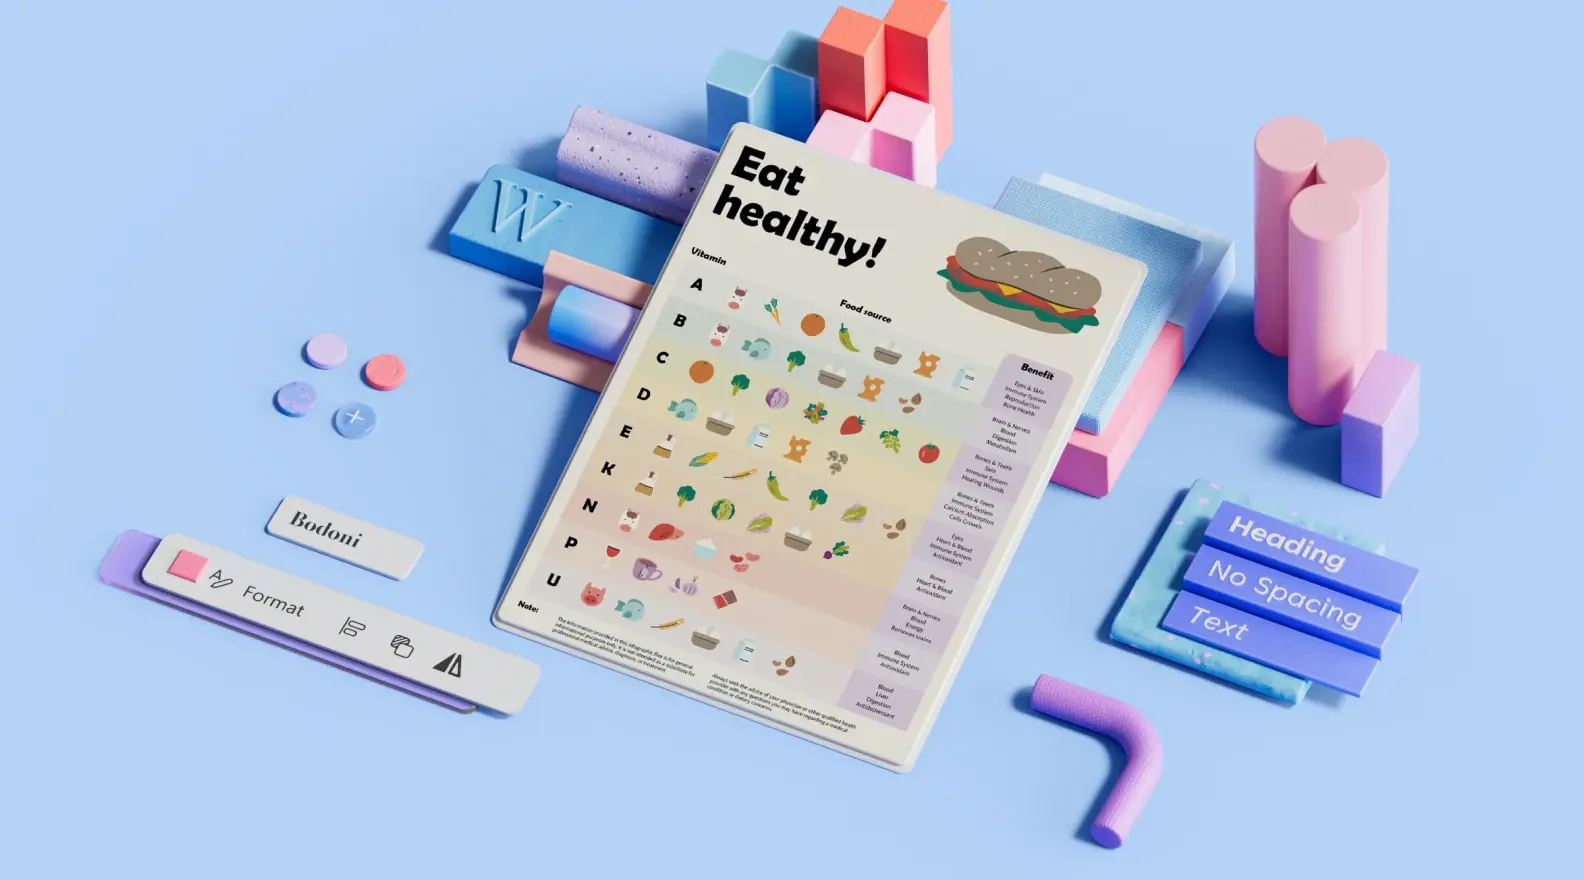 Șablon de poster pentru o alimentație sănătoasă înconjurat de elemente de design 3D